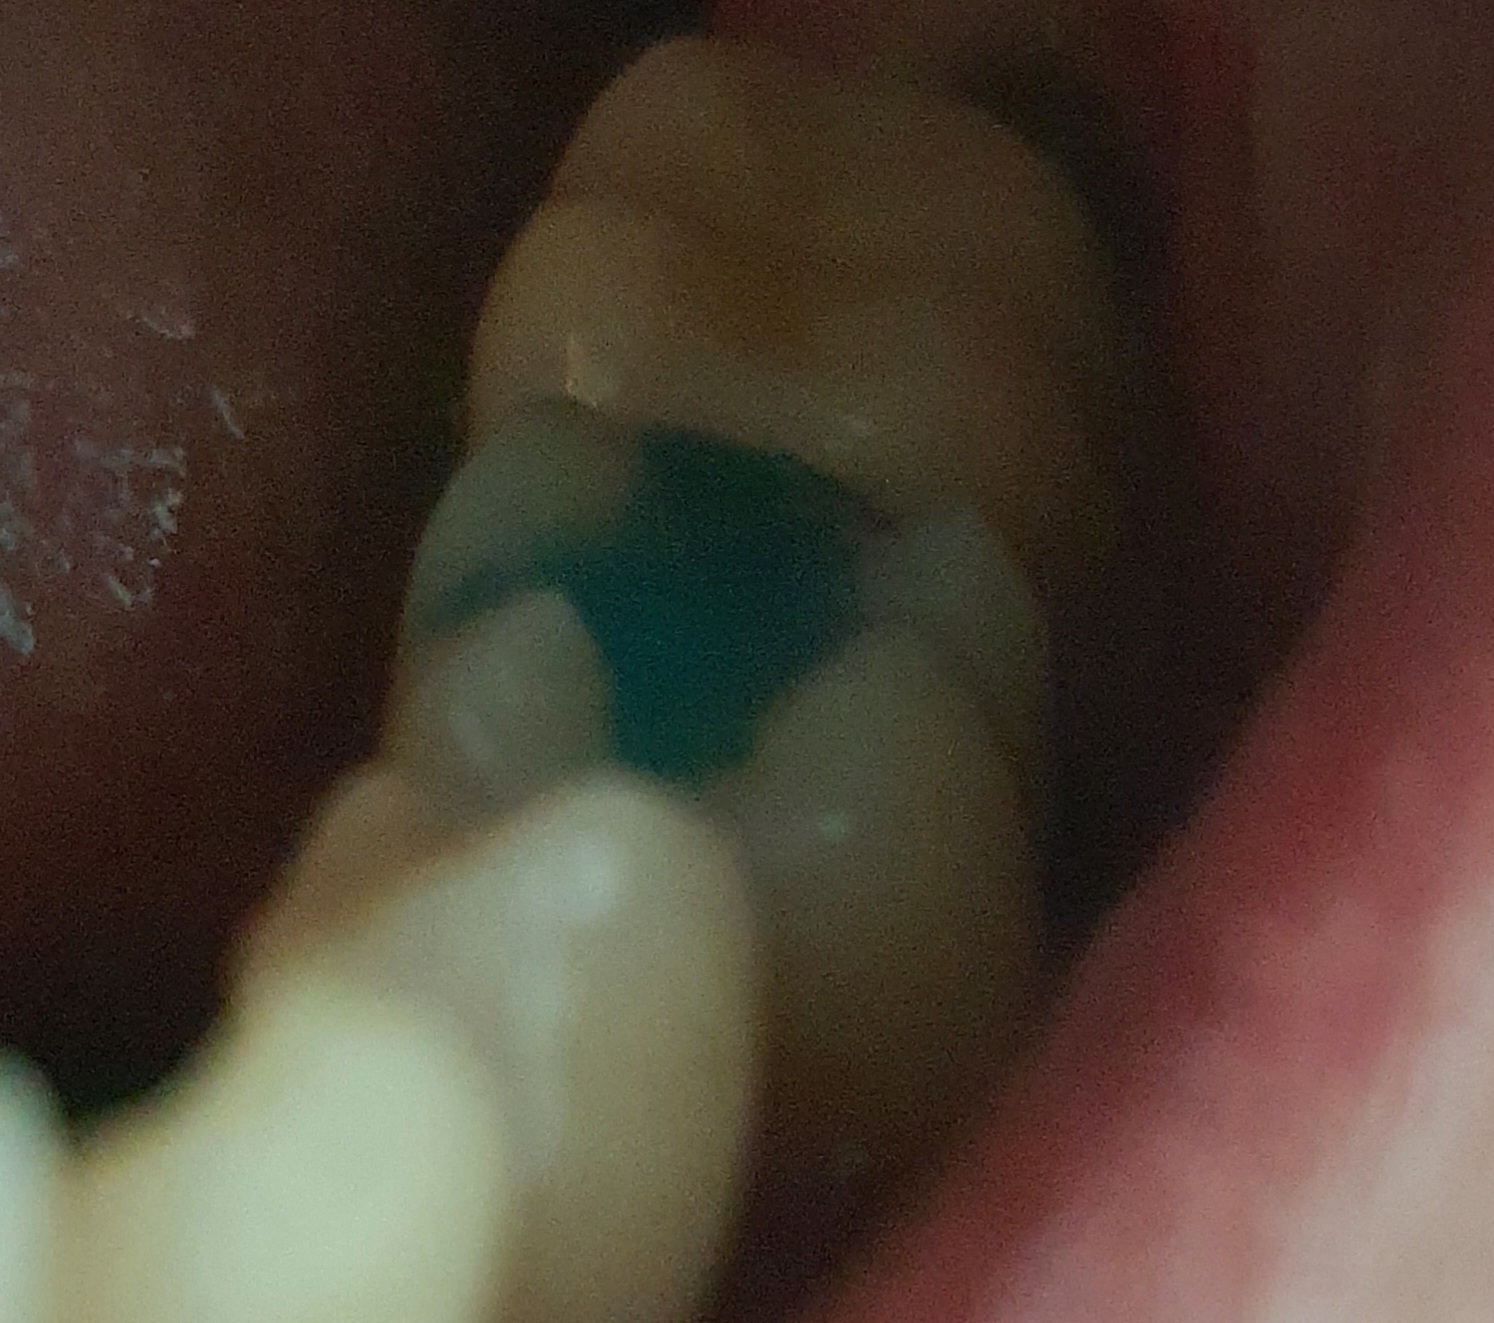 임시로 때운 나의 깨진 이빨